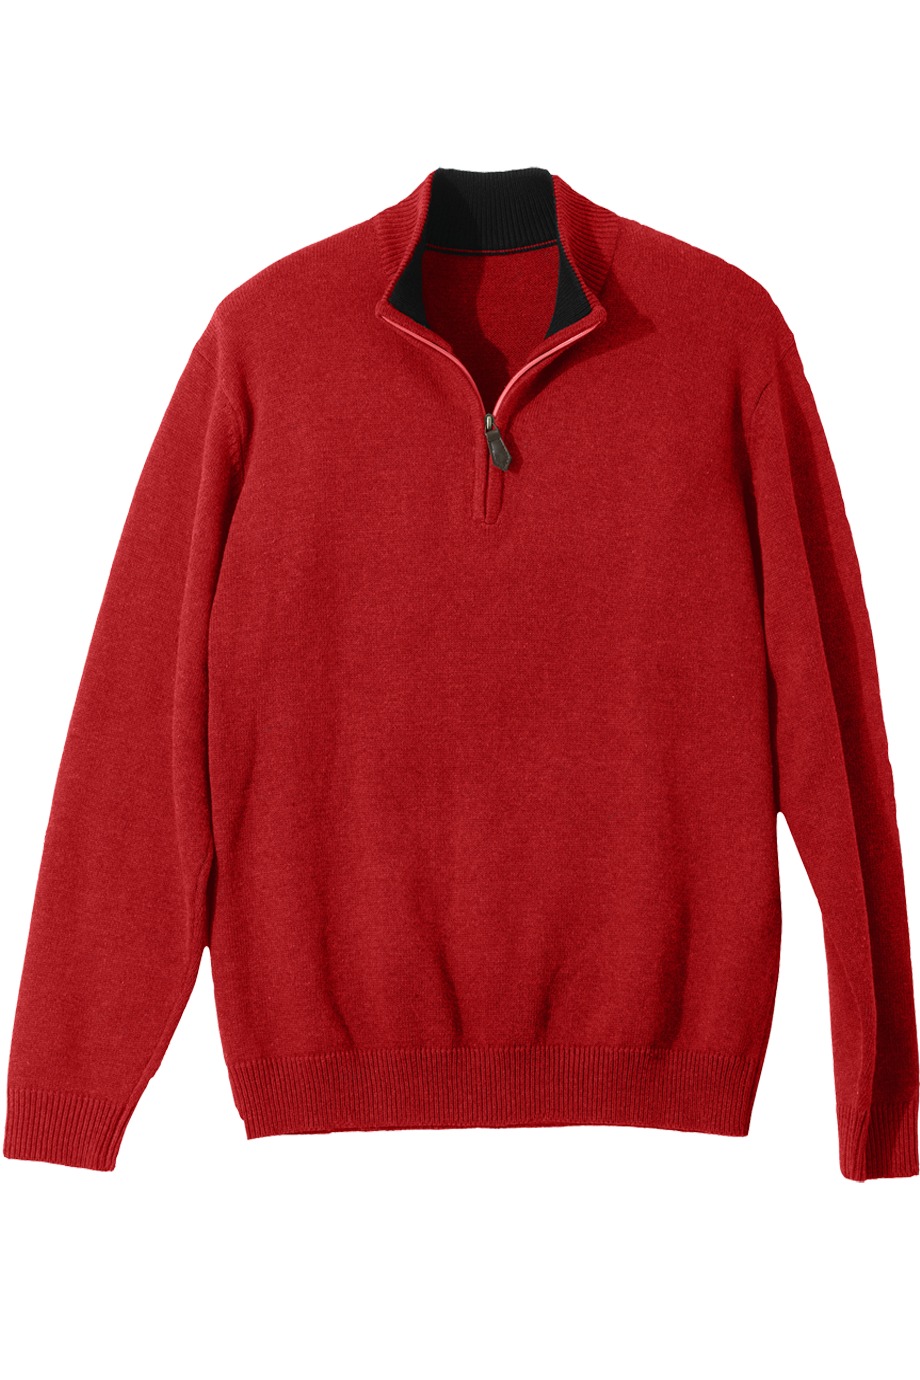 Edwards Garment 712 - Quarter Zip Sweater